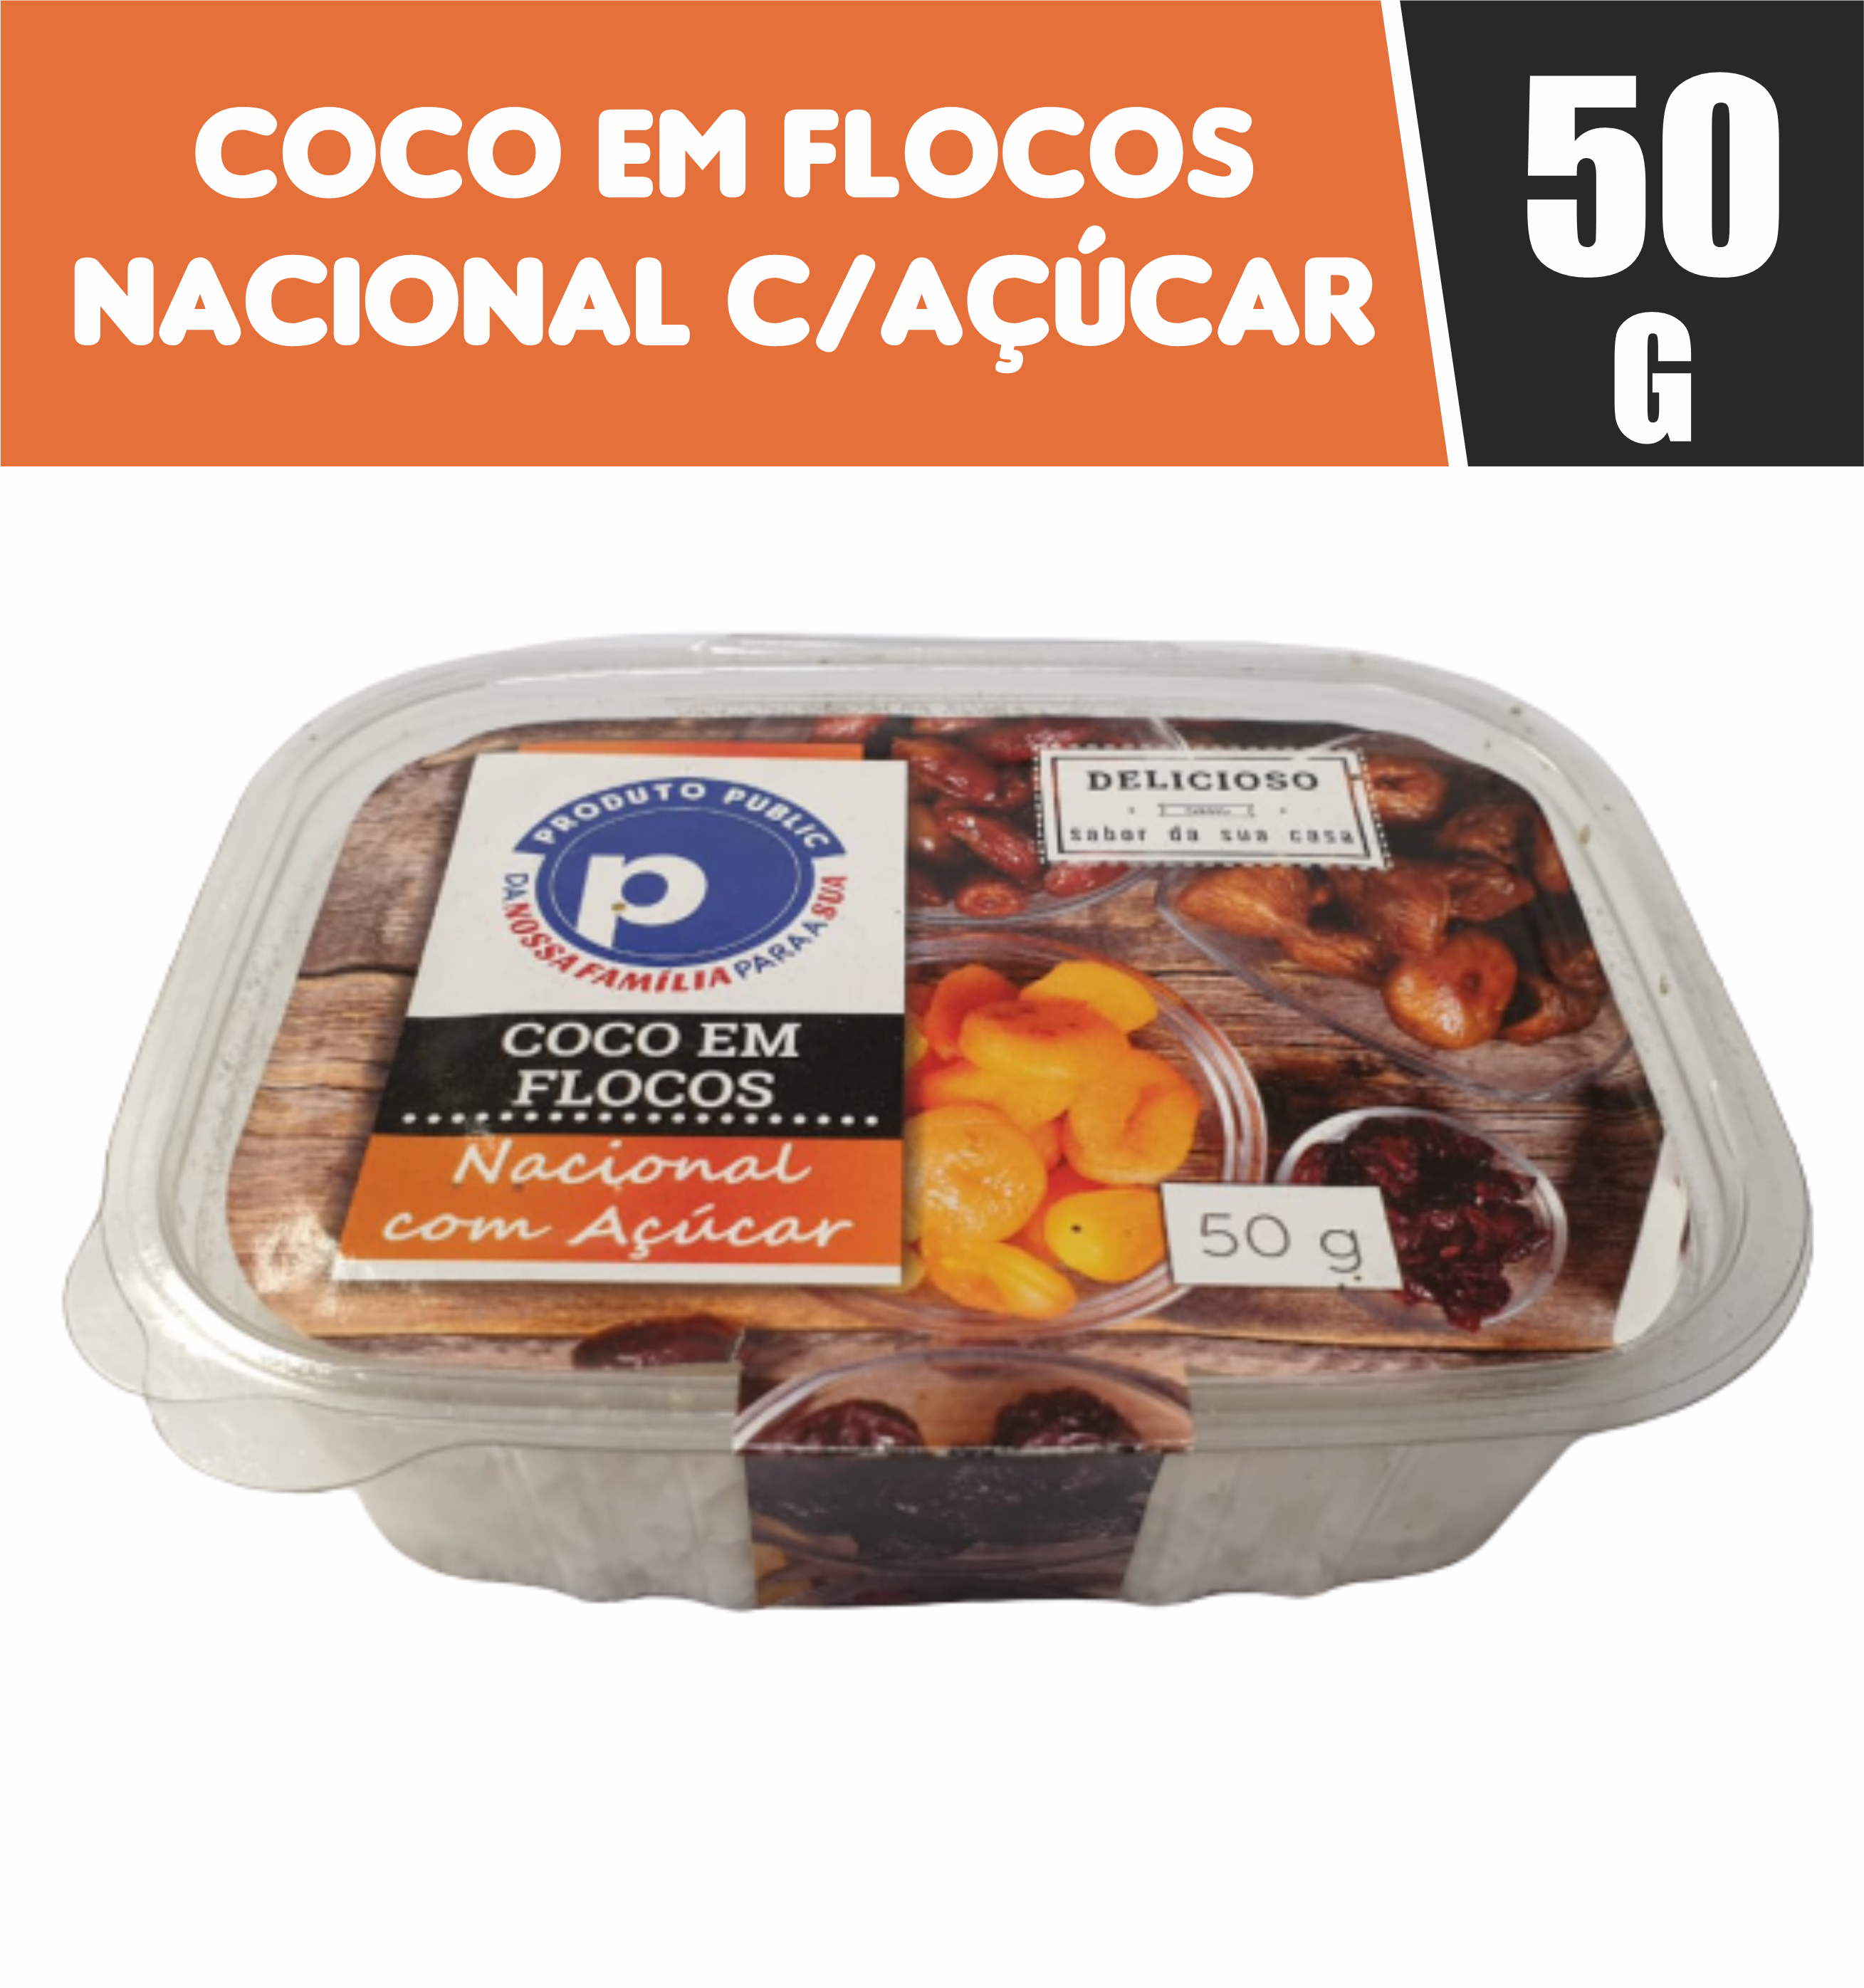 7898653353498 - COCO FLOCOS NACIONAL C/ACUCAR PUBLIC 50G